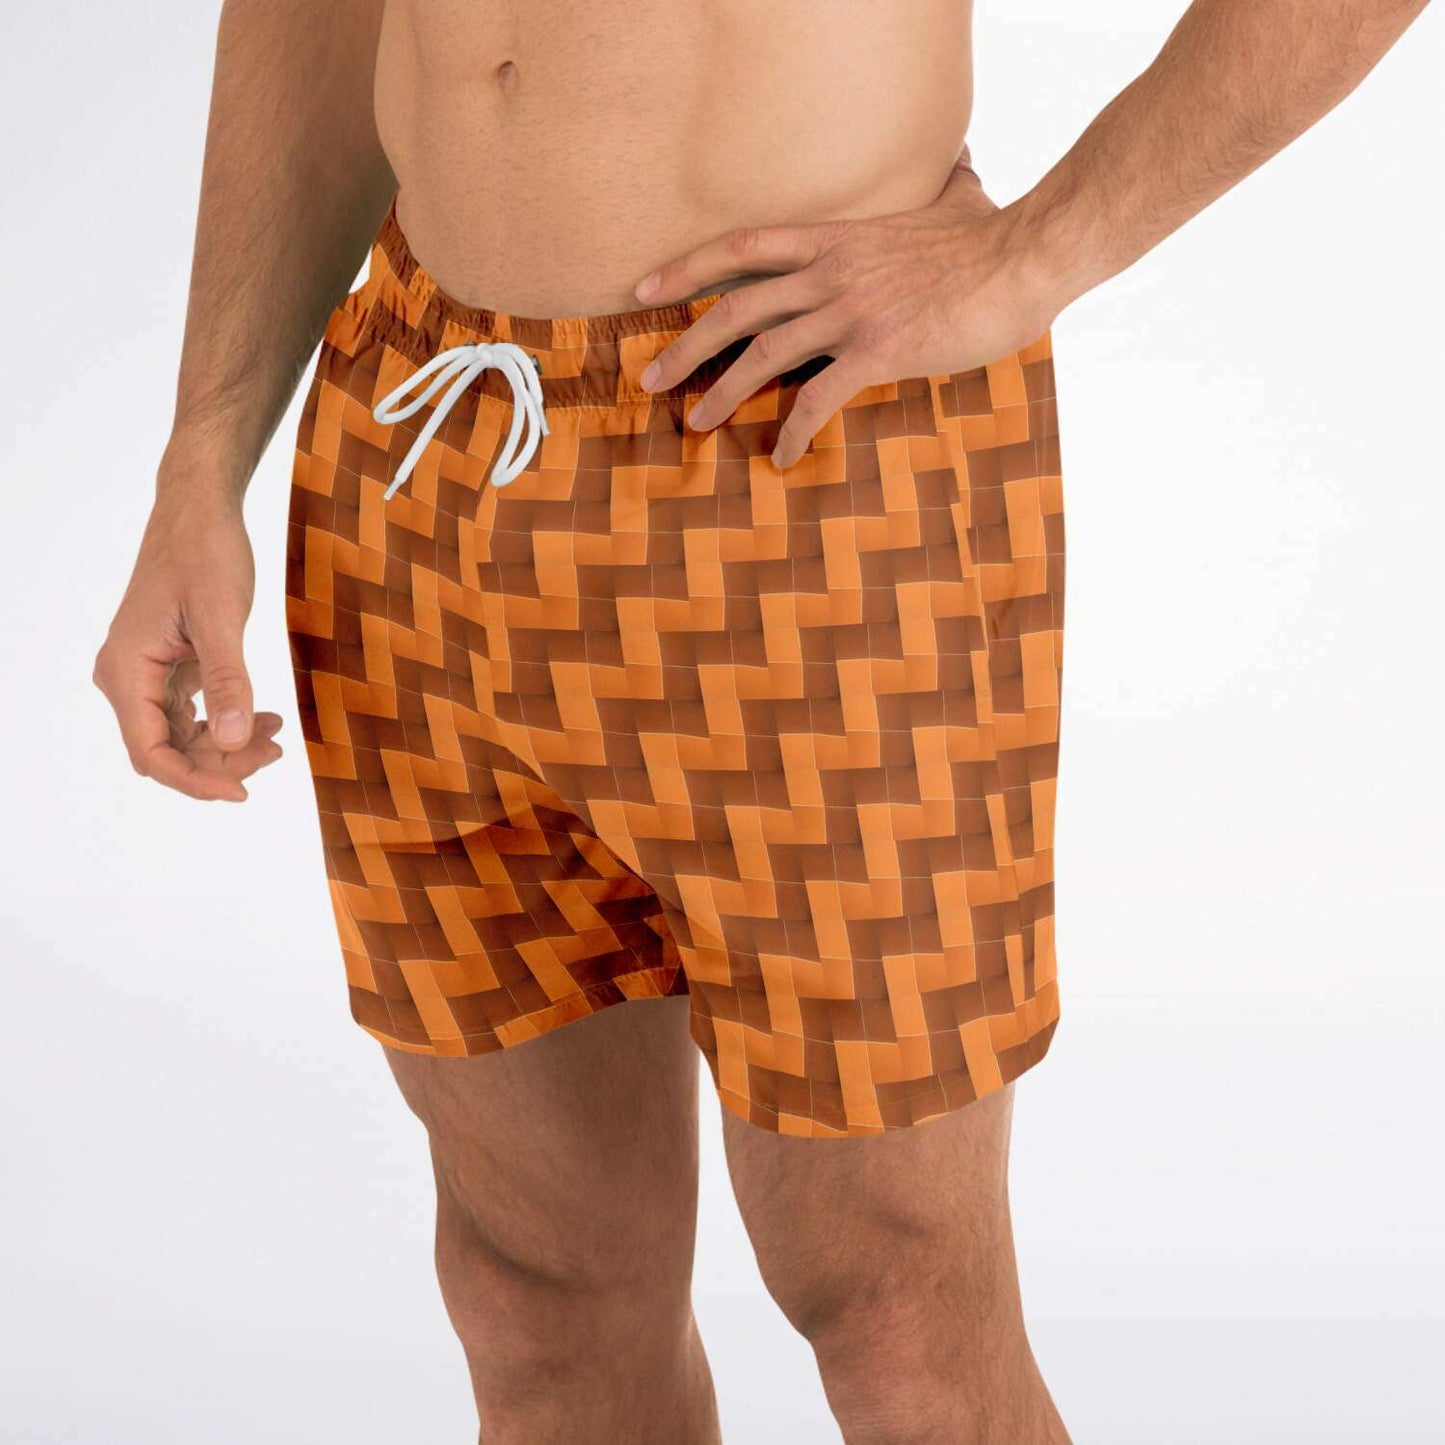 Swim Trunks (Burnt Orange Tiles)